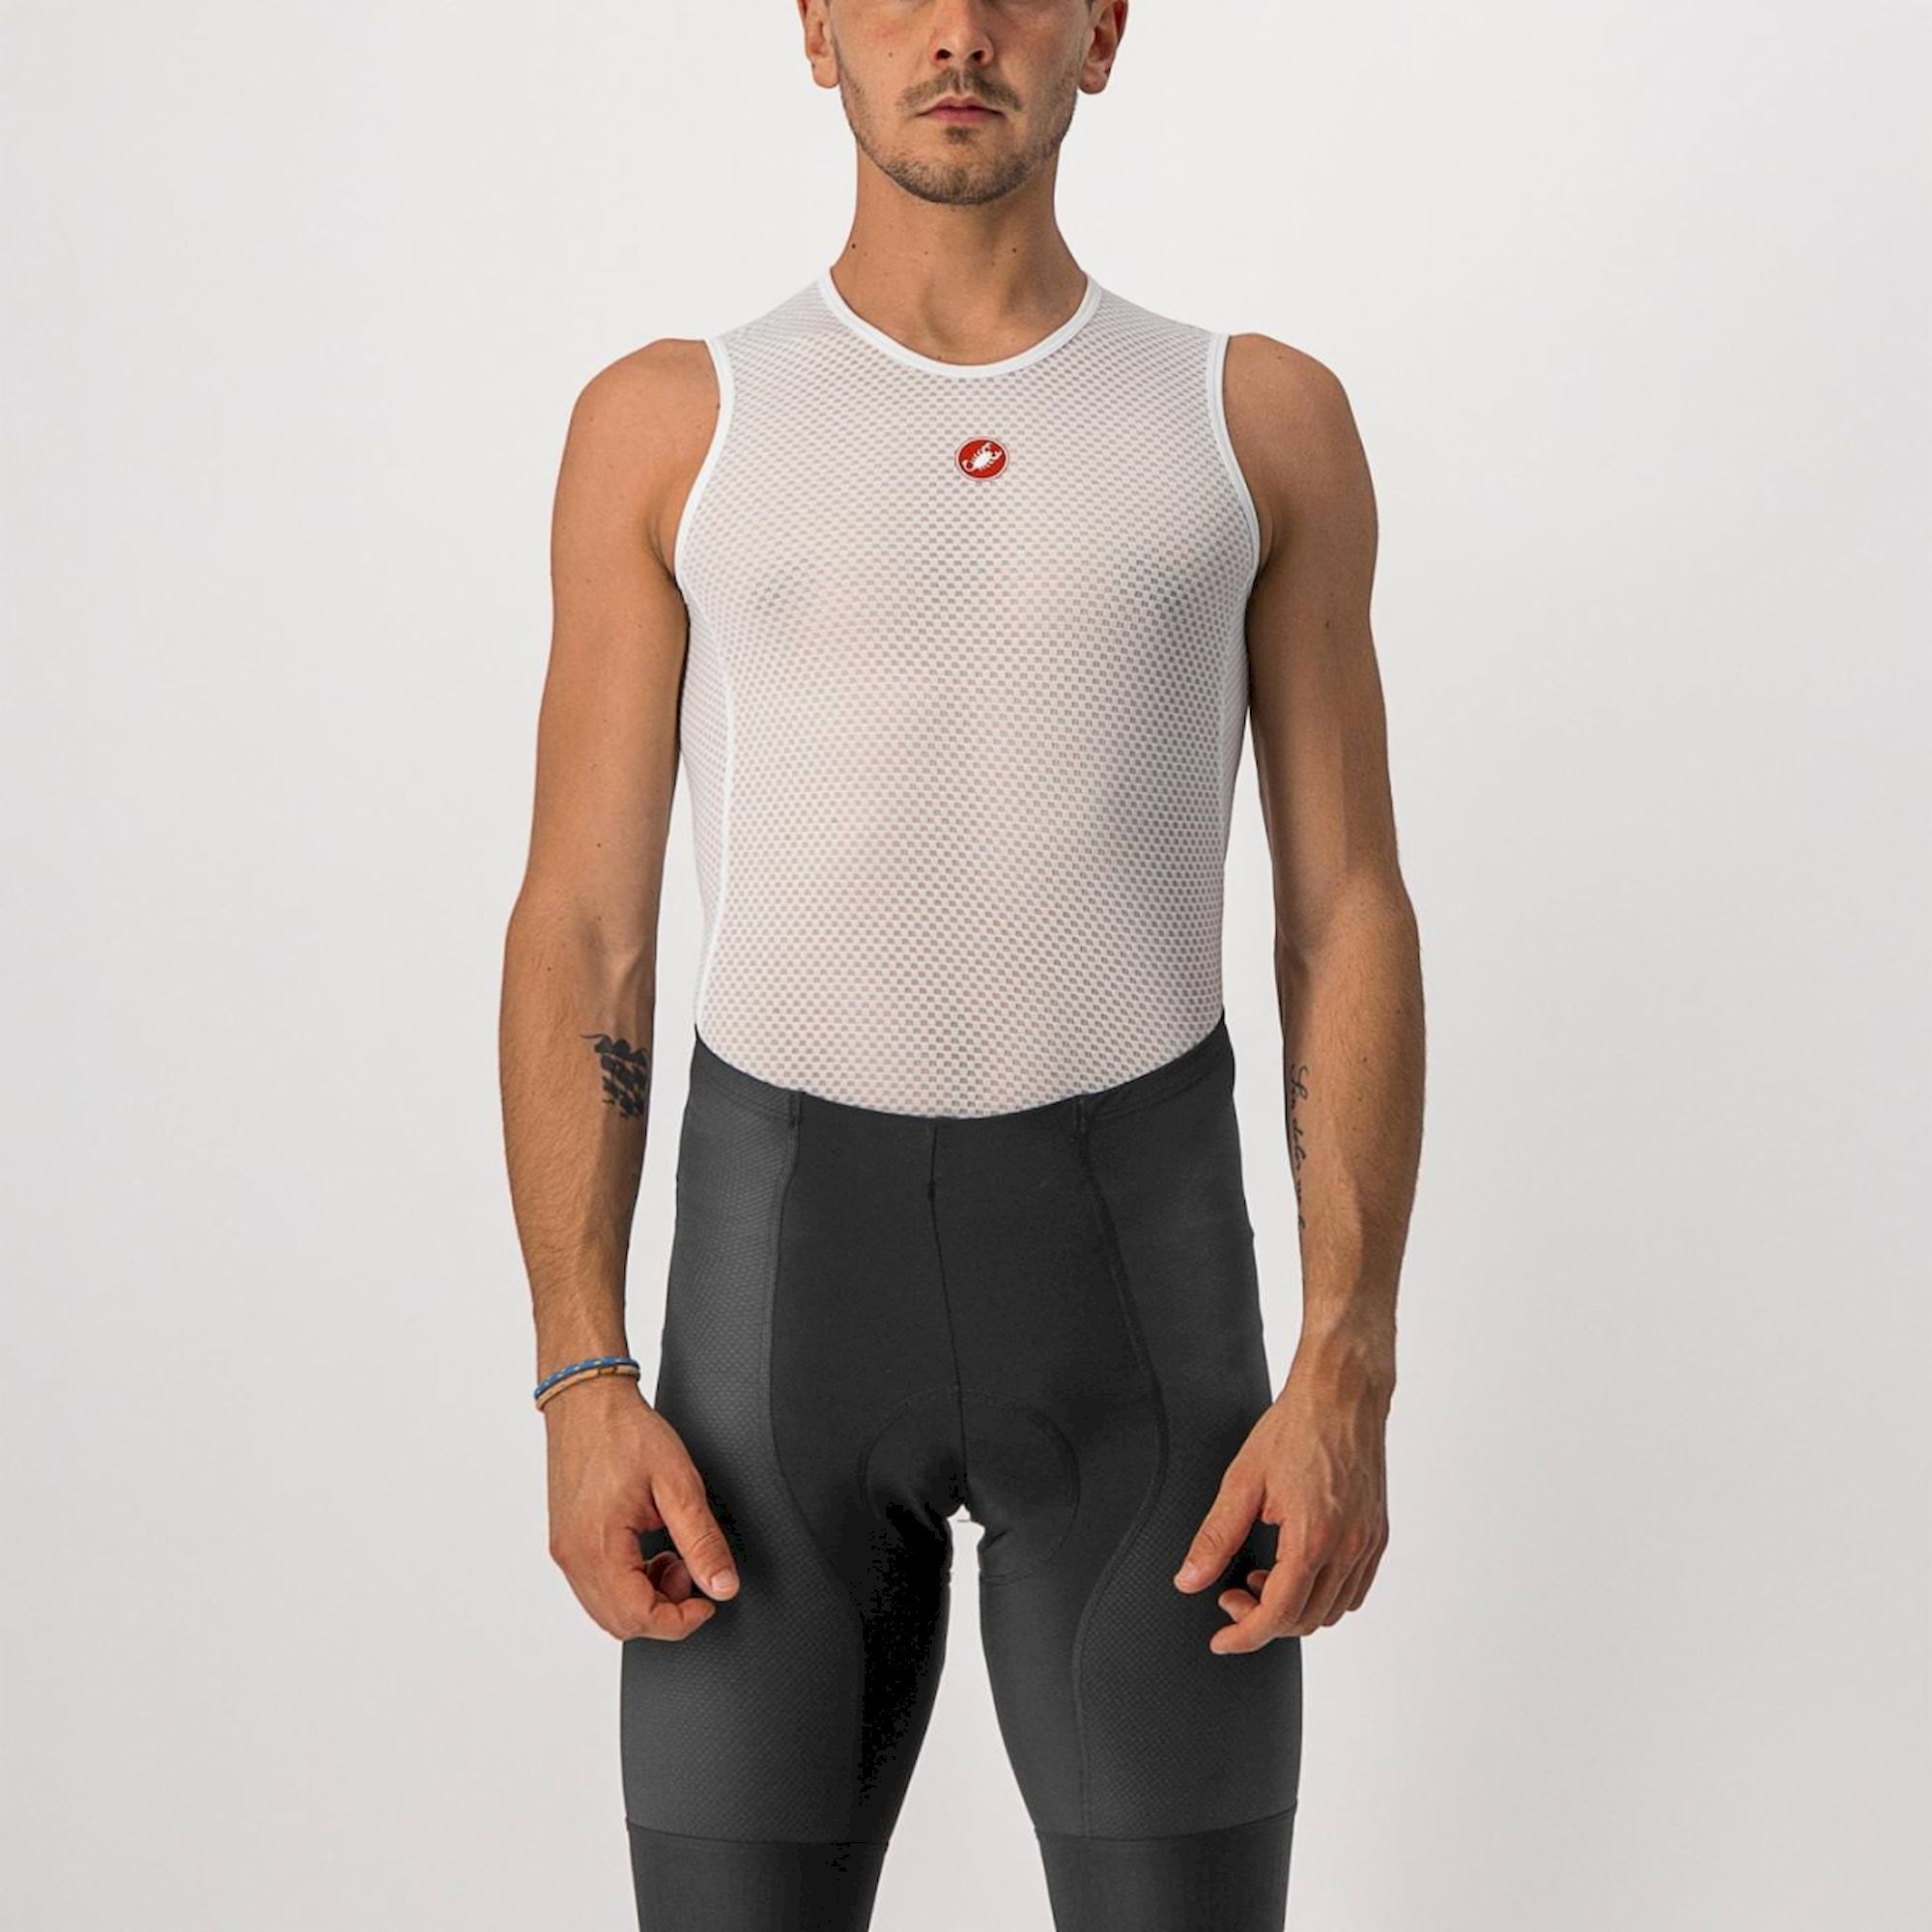 Castelli Pro Issue Sleeveless - Technické cyklistické spodní prádlo | Hardloop